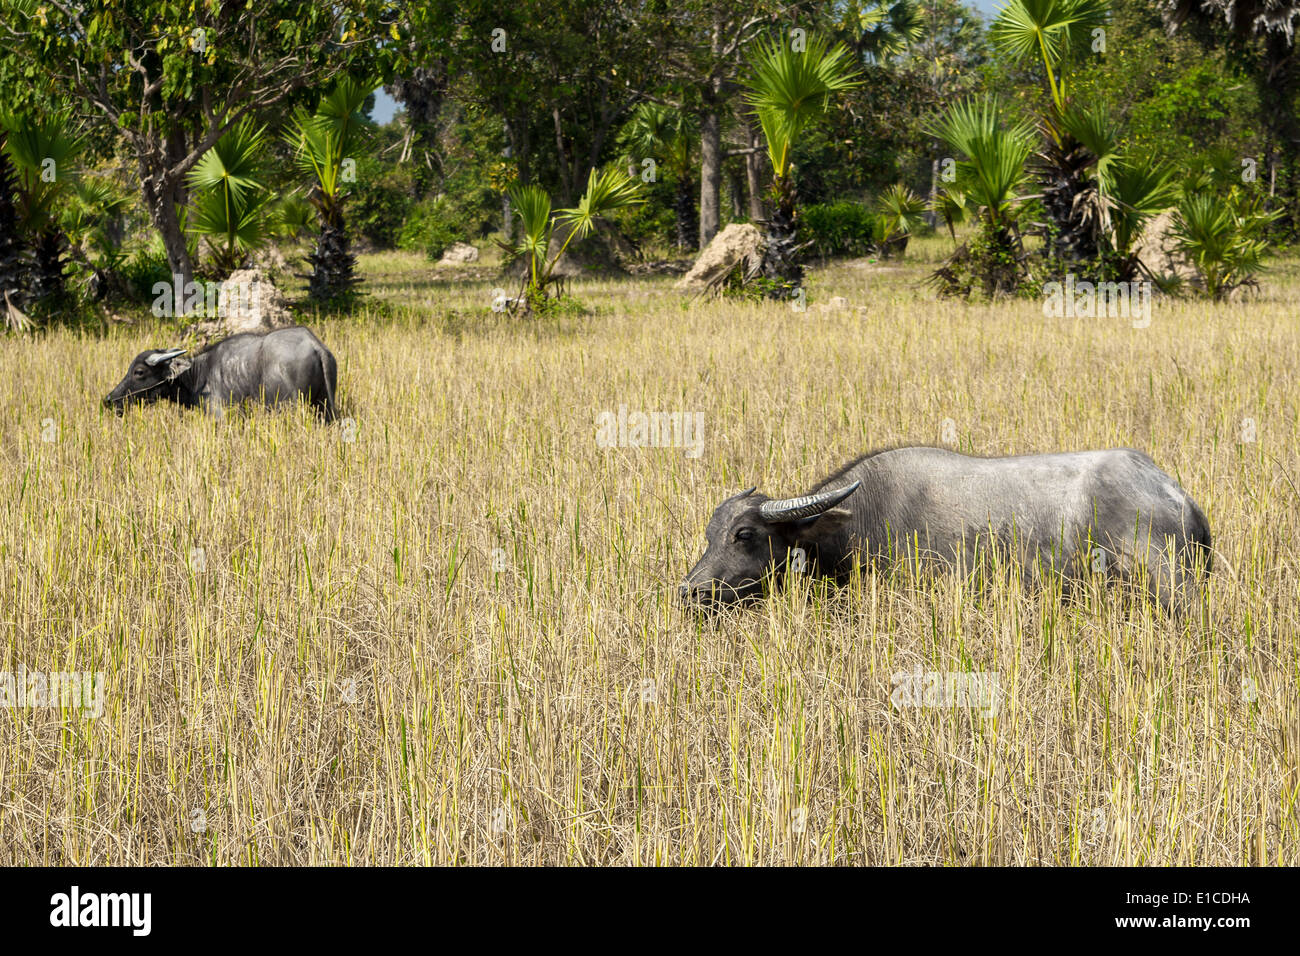 La wild water buffalo (Bubalus arnee), chiamato anche bufalo asiatico e il bufalo asiatico, è una grande nativo di bovino al sud-est asiatico Foto Stock